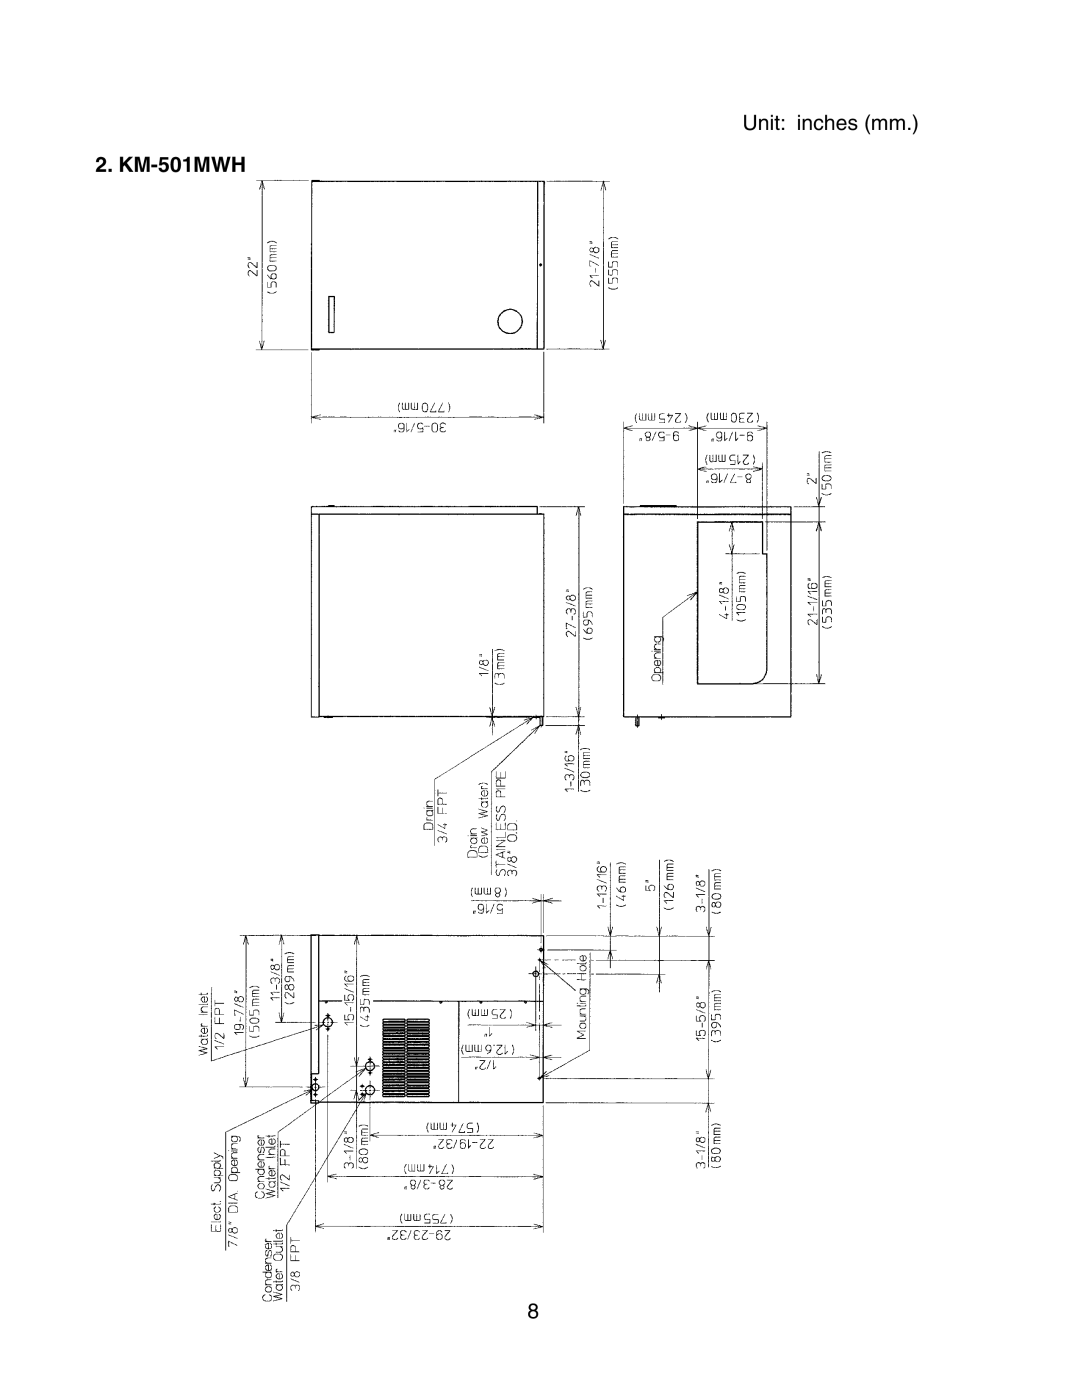 Hoshizaki KM-501MRH instruction manual KM-501MWH, Unit inches mm 